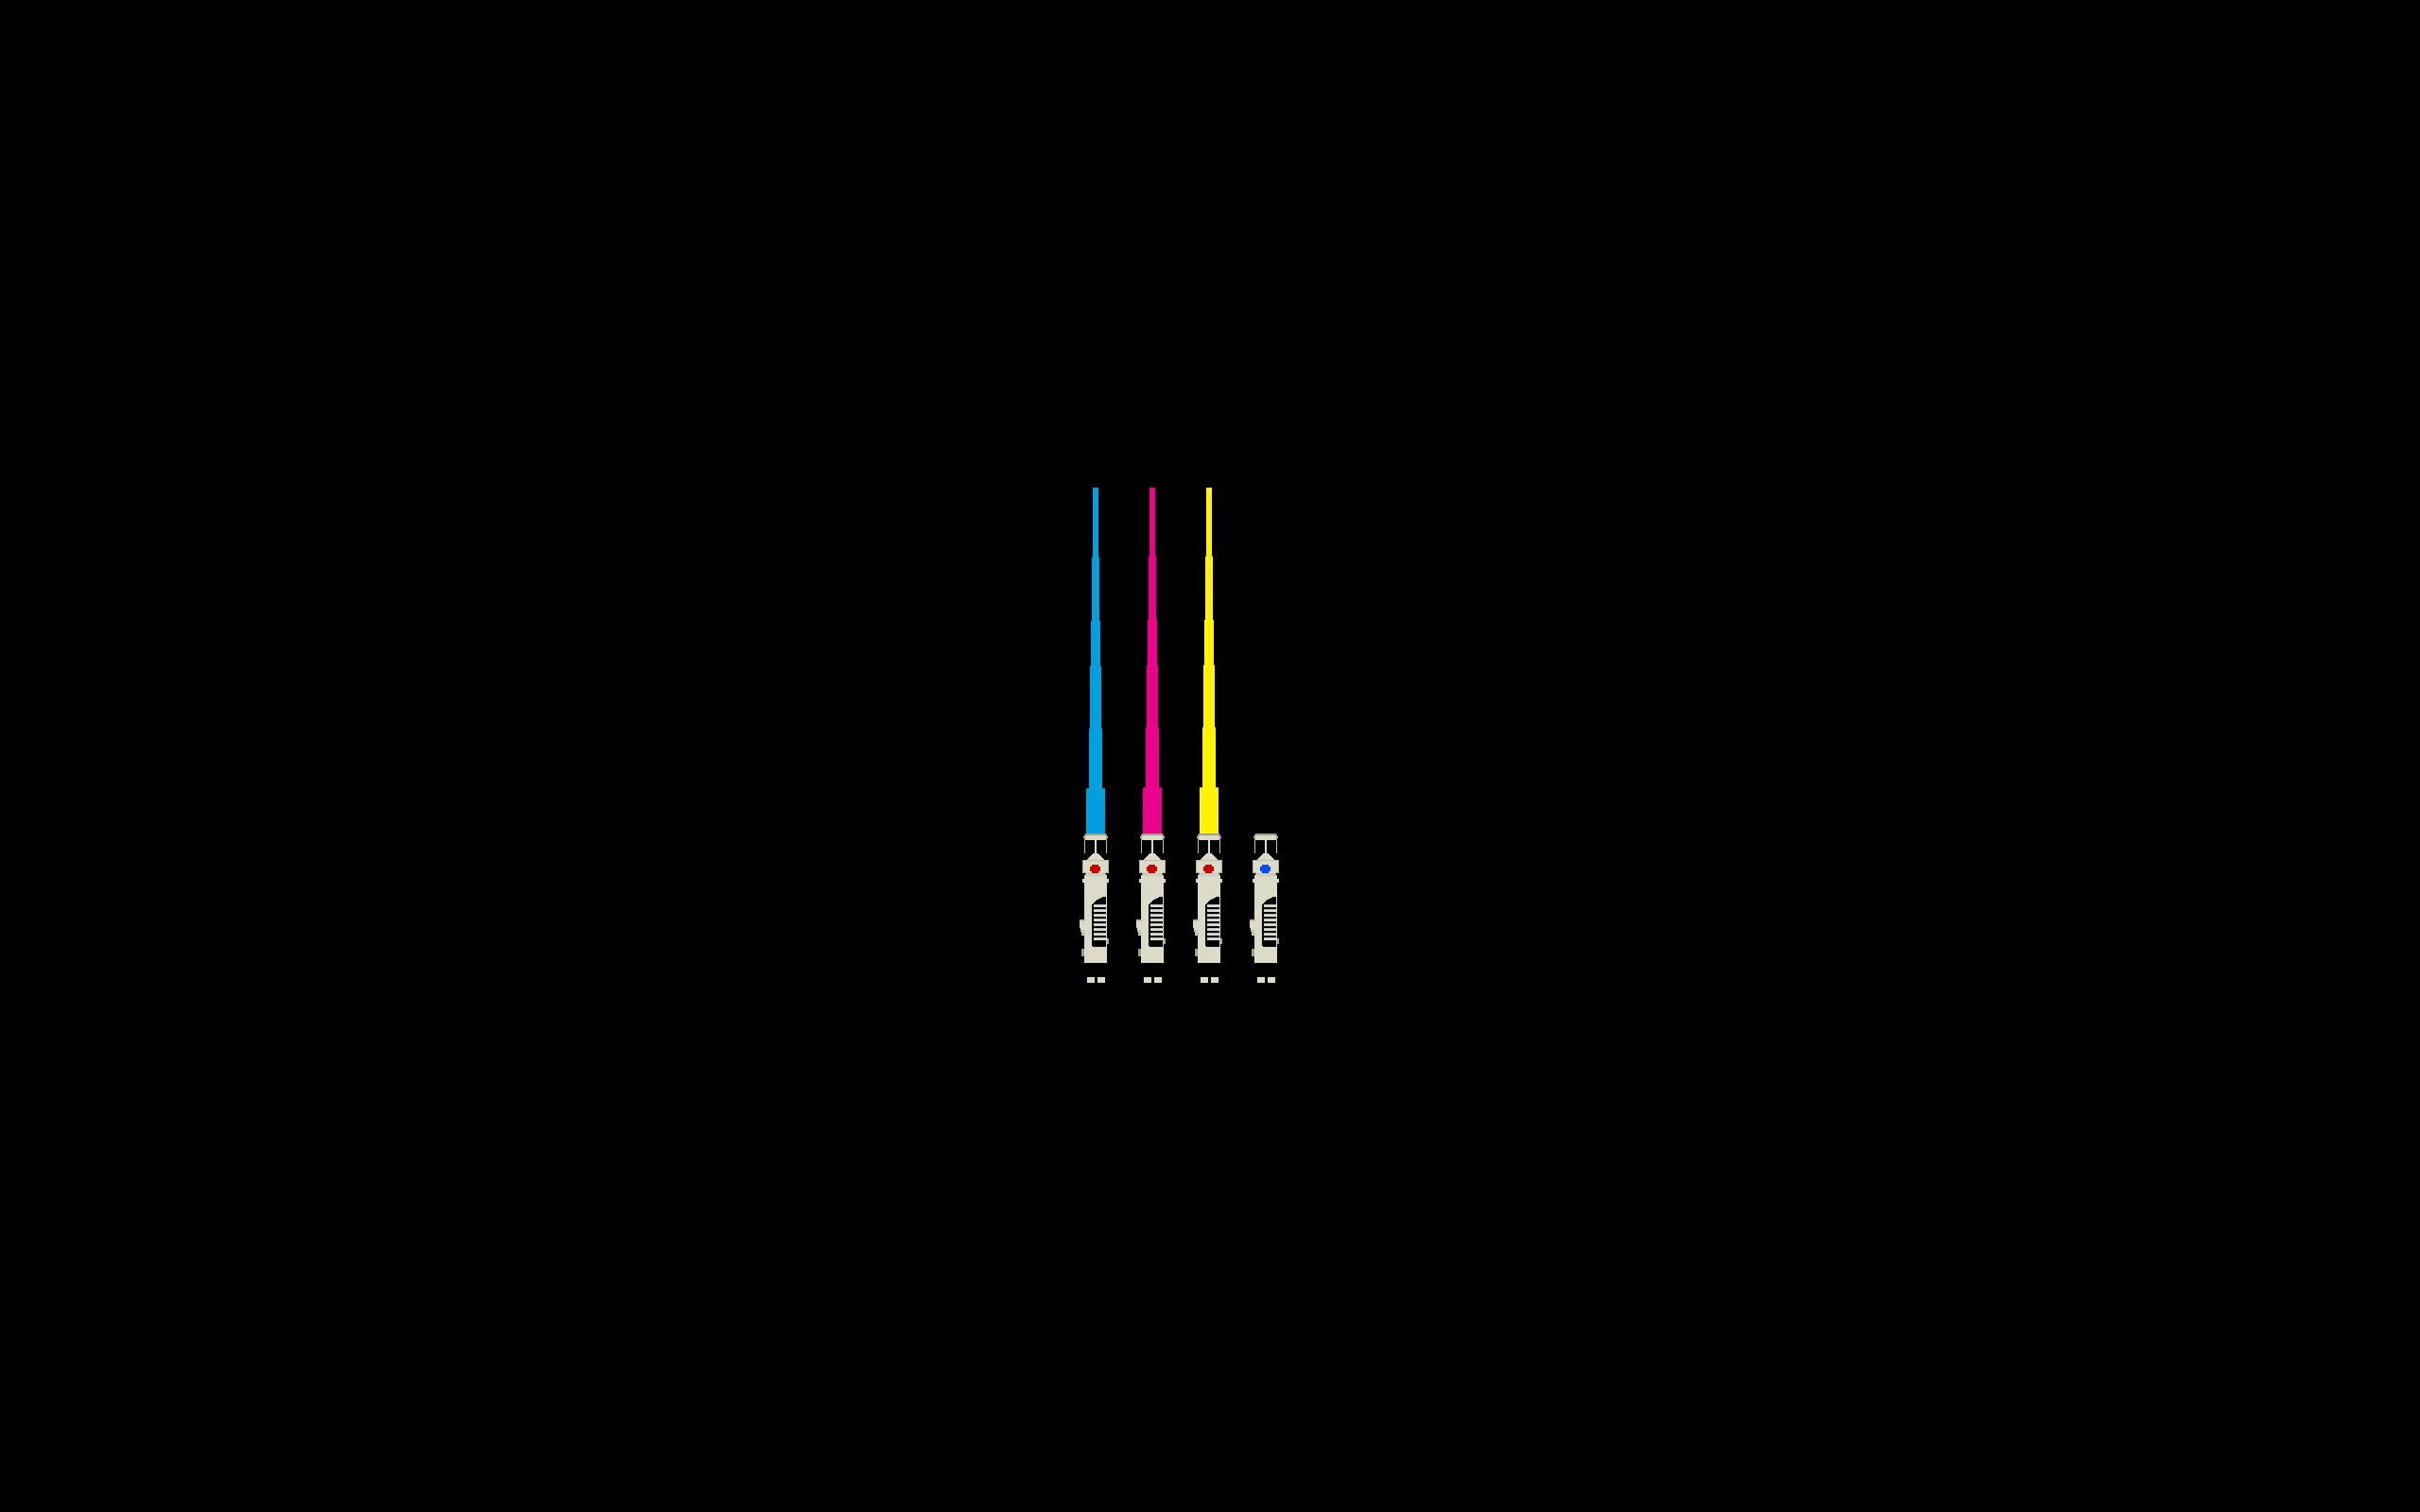 General 2560x1600 Star Wars lightsaber CMYK minimalism artwork simple background black background